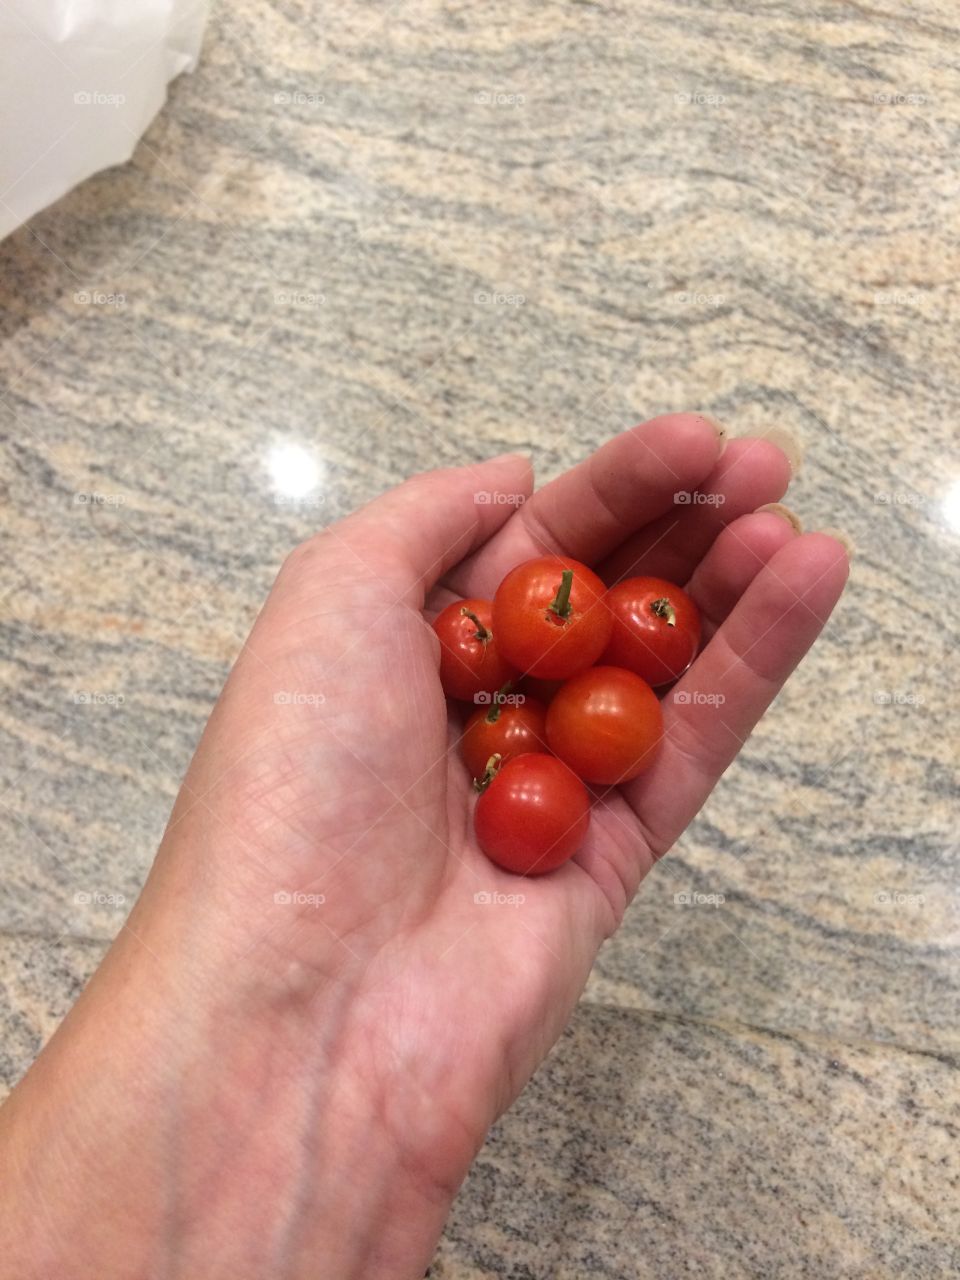 Teeny tiny tomatoes